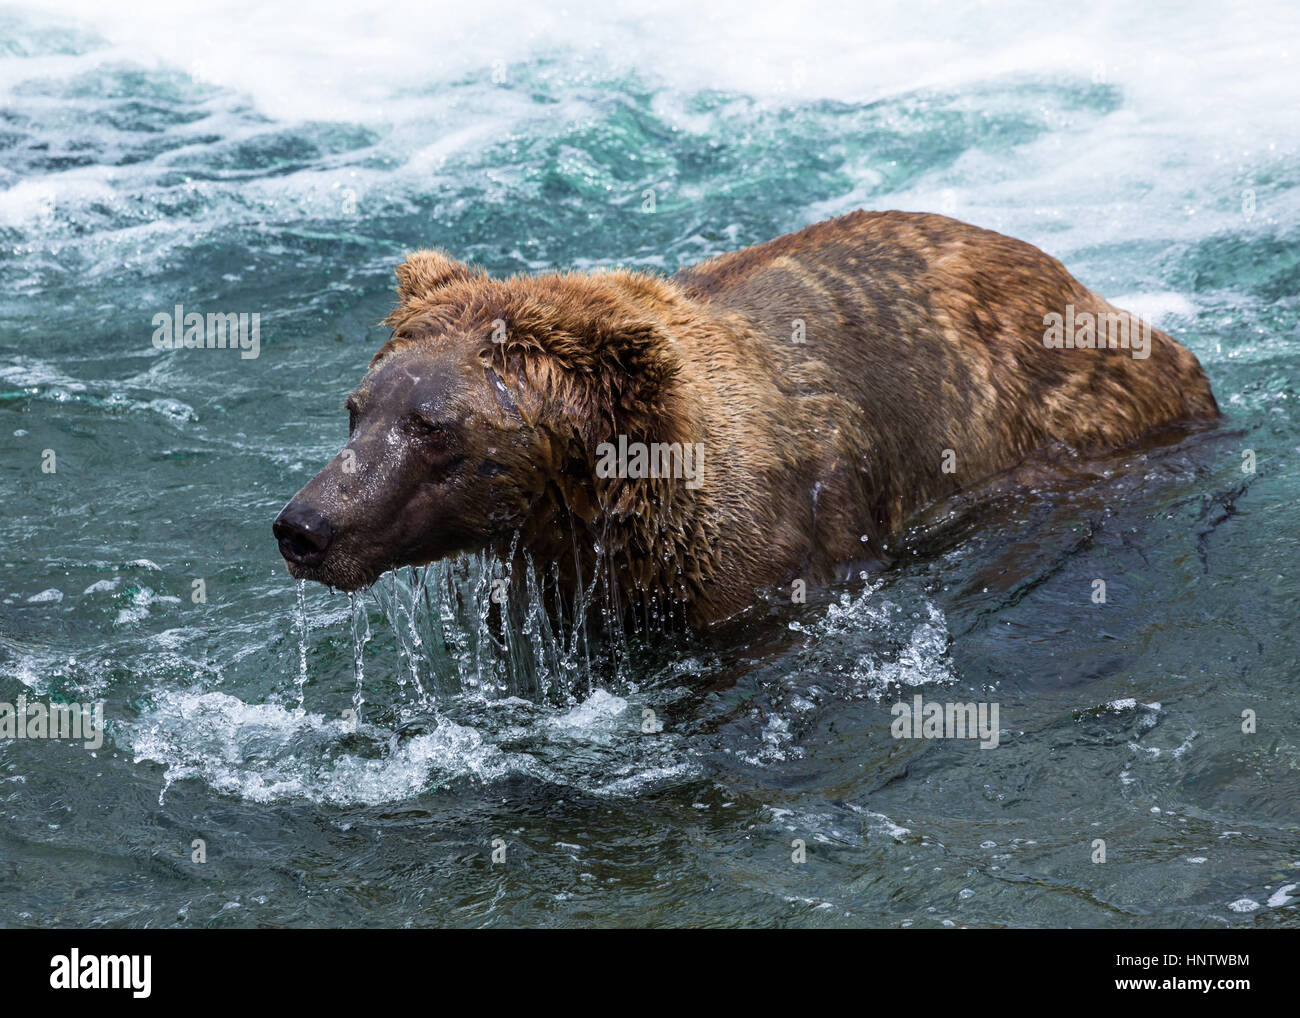 Großer Eber Grizzlybär ist tropfnaß nach dem Schwimmen durch einen Fluss unter Brooks fällt und auf der Suche nach Fisch unter Wasser. Stockfoto